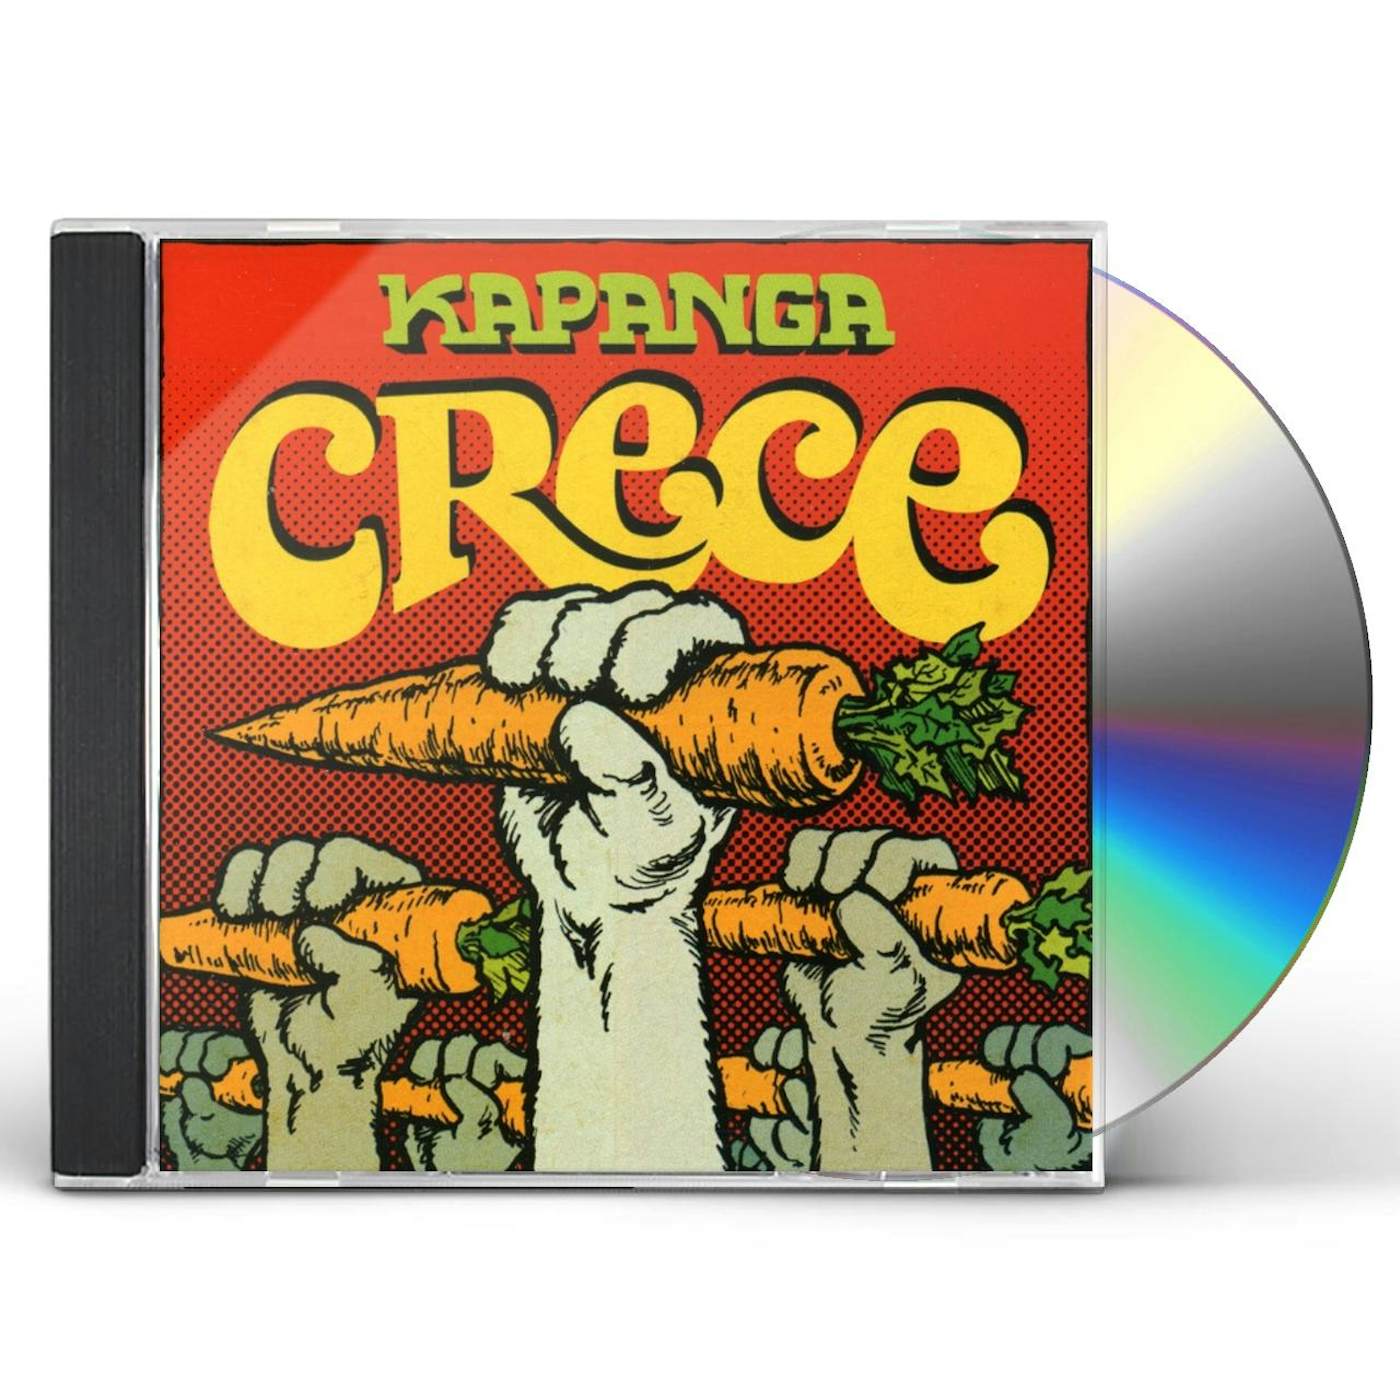 Kapanga CRECE CD